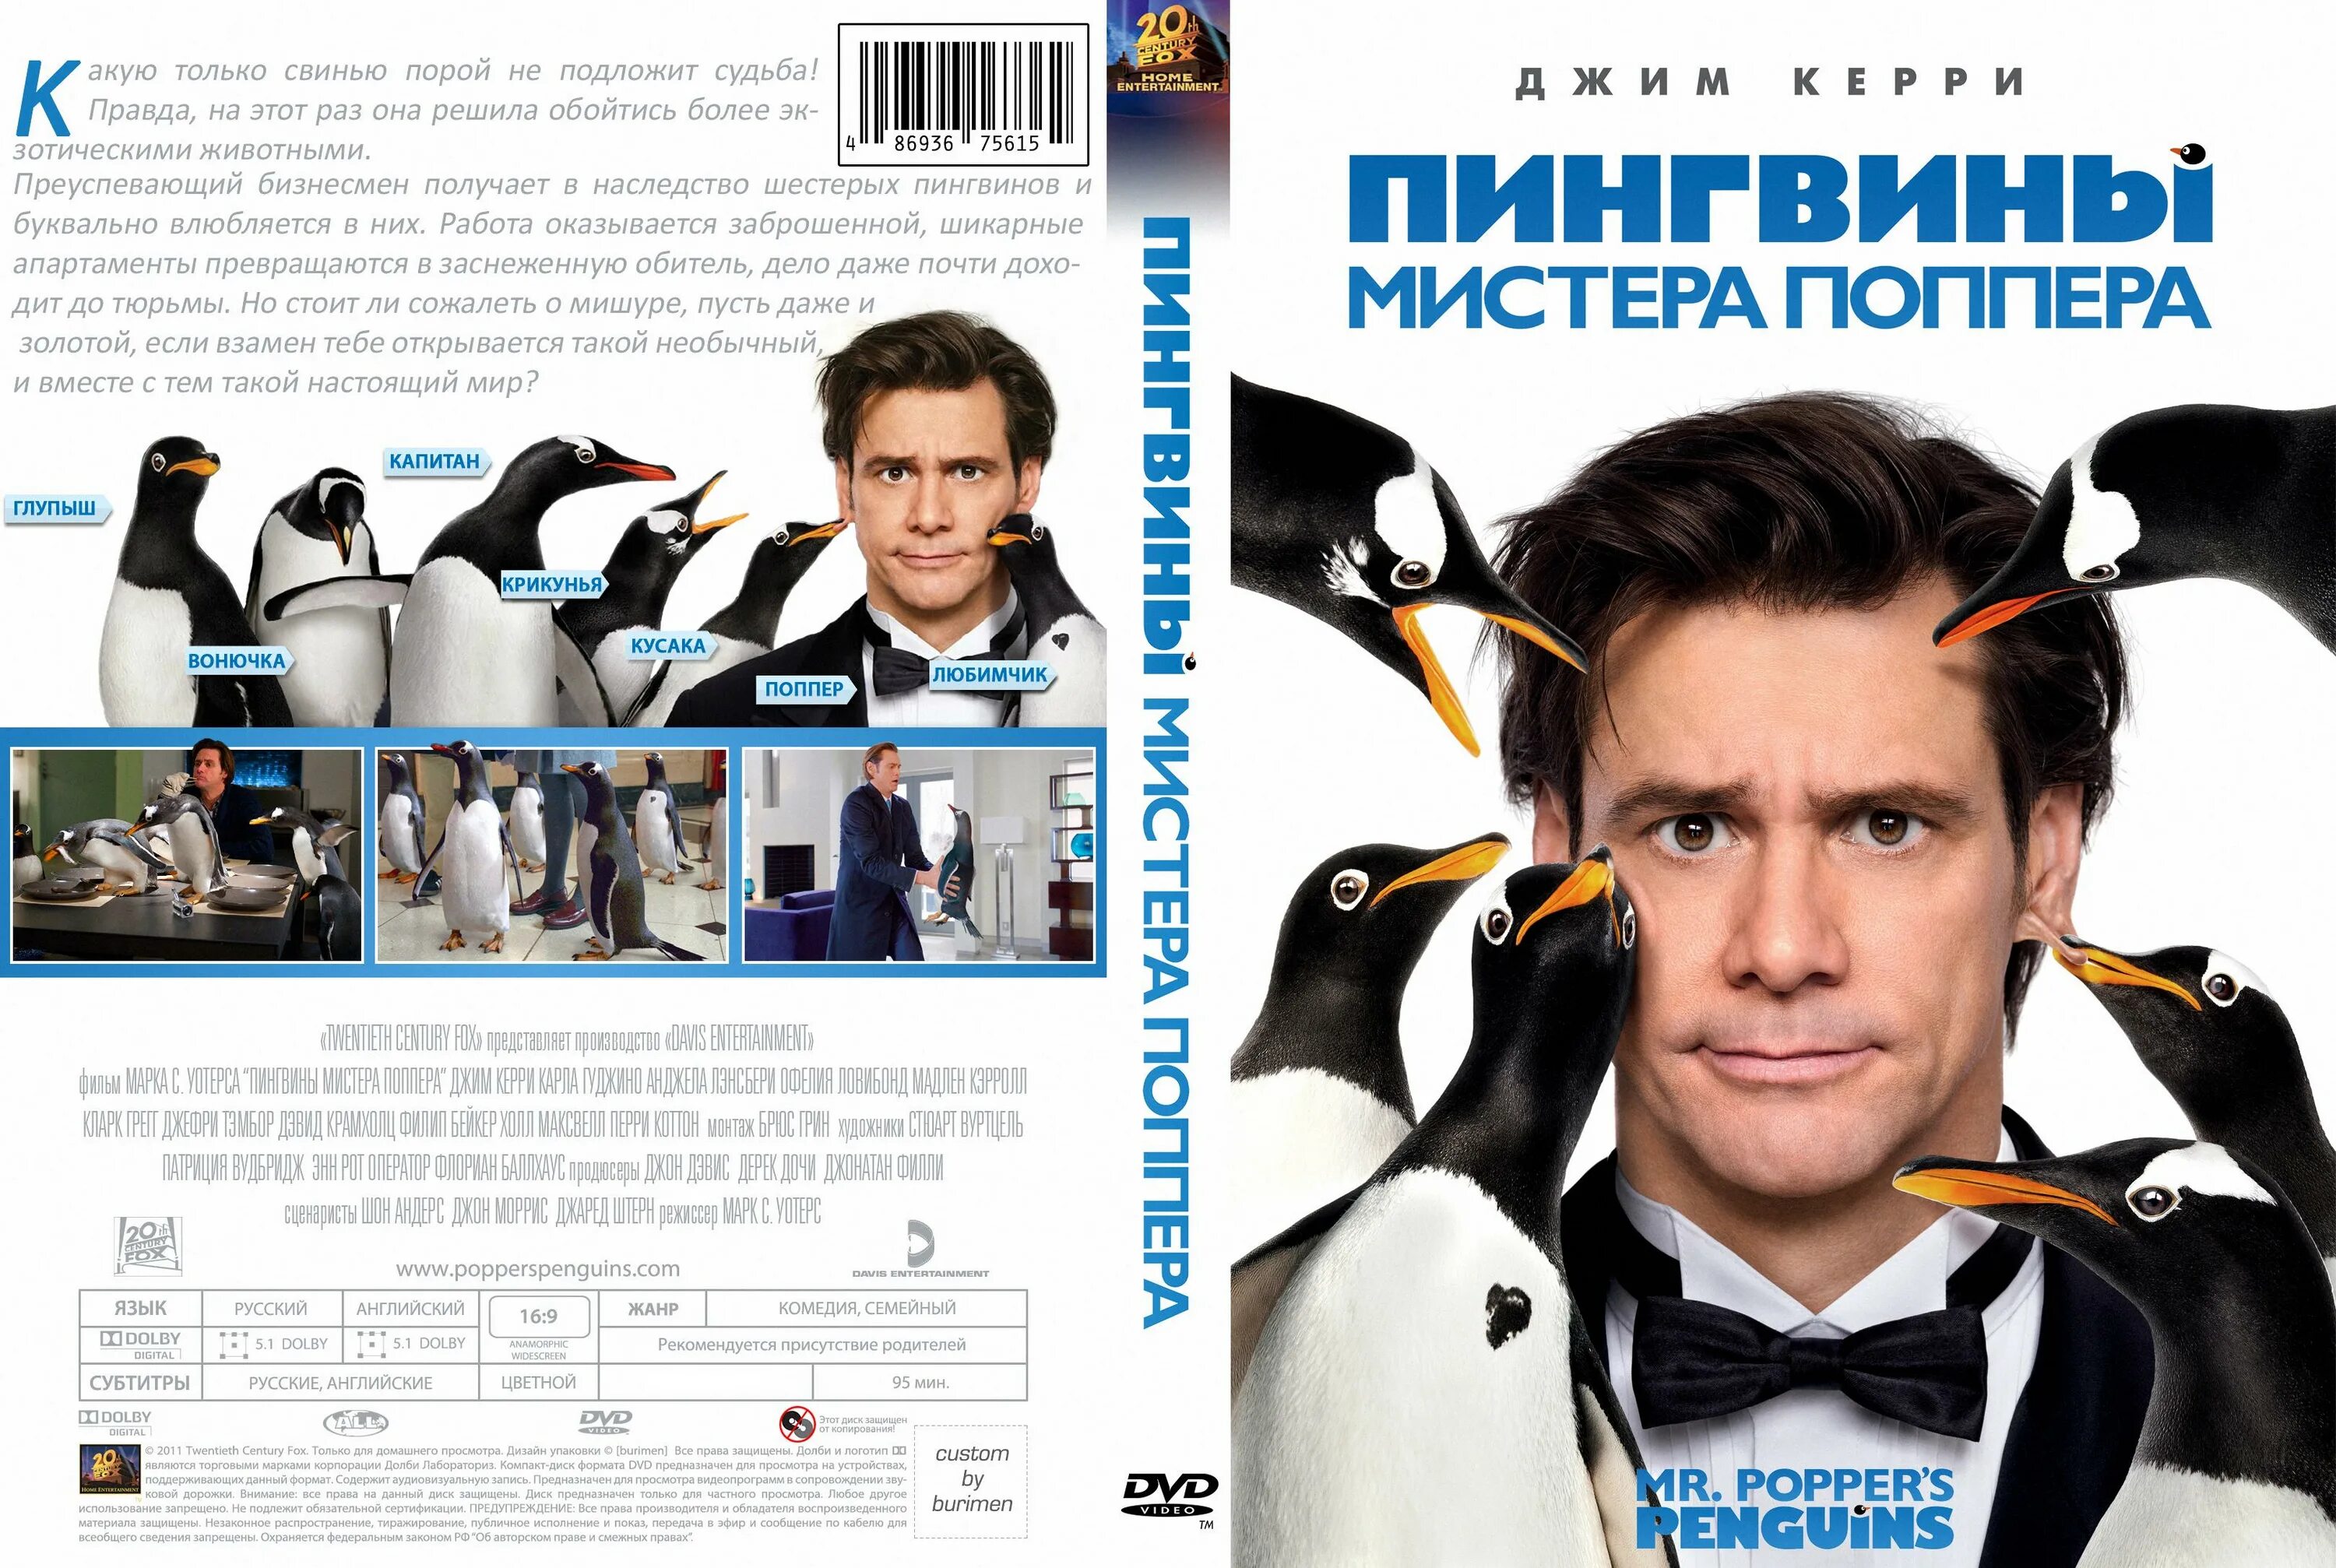 Джим Керри пингвины. Джим Керри пингвины мистера Поппера. Комедия про пингвинов с Джимом Керри.